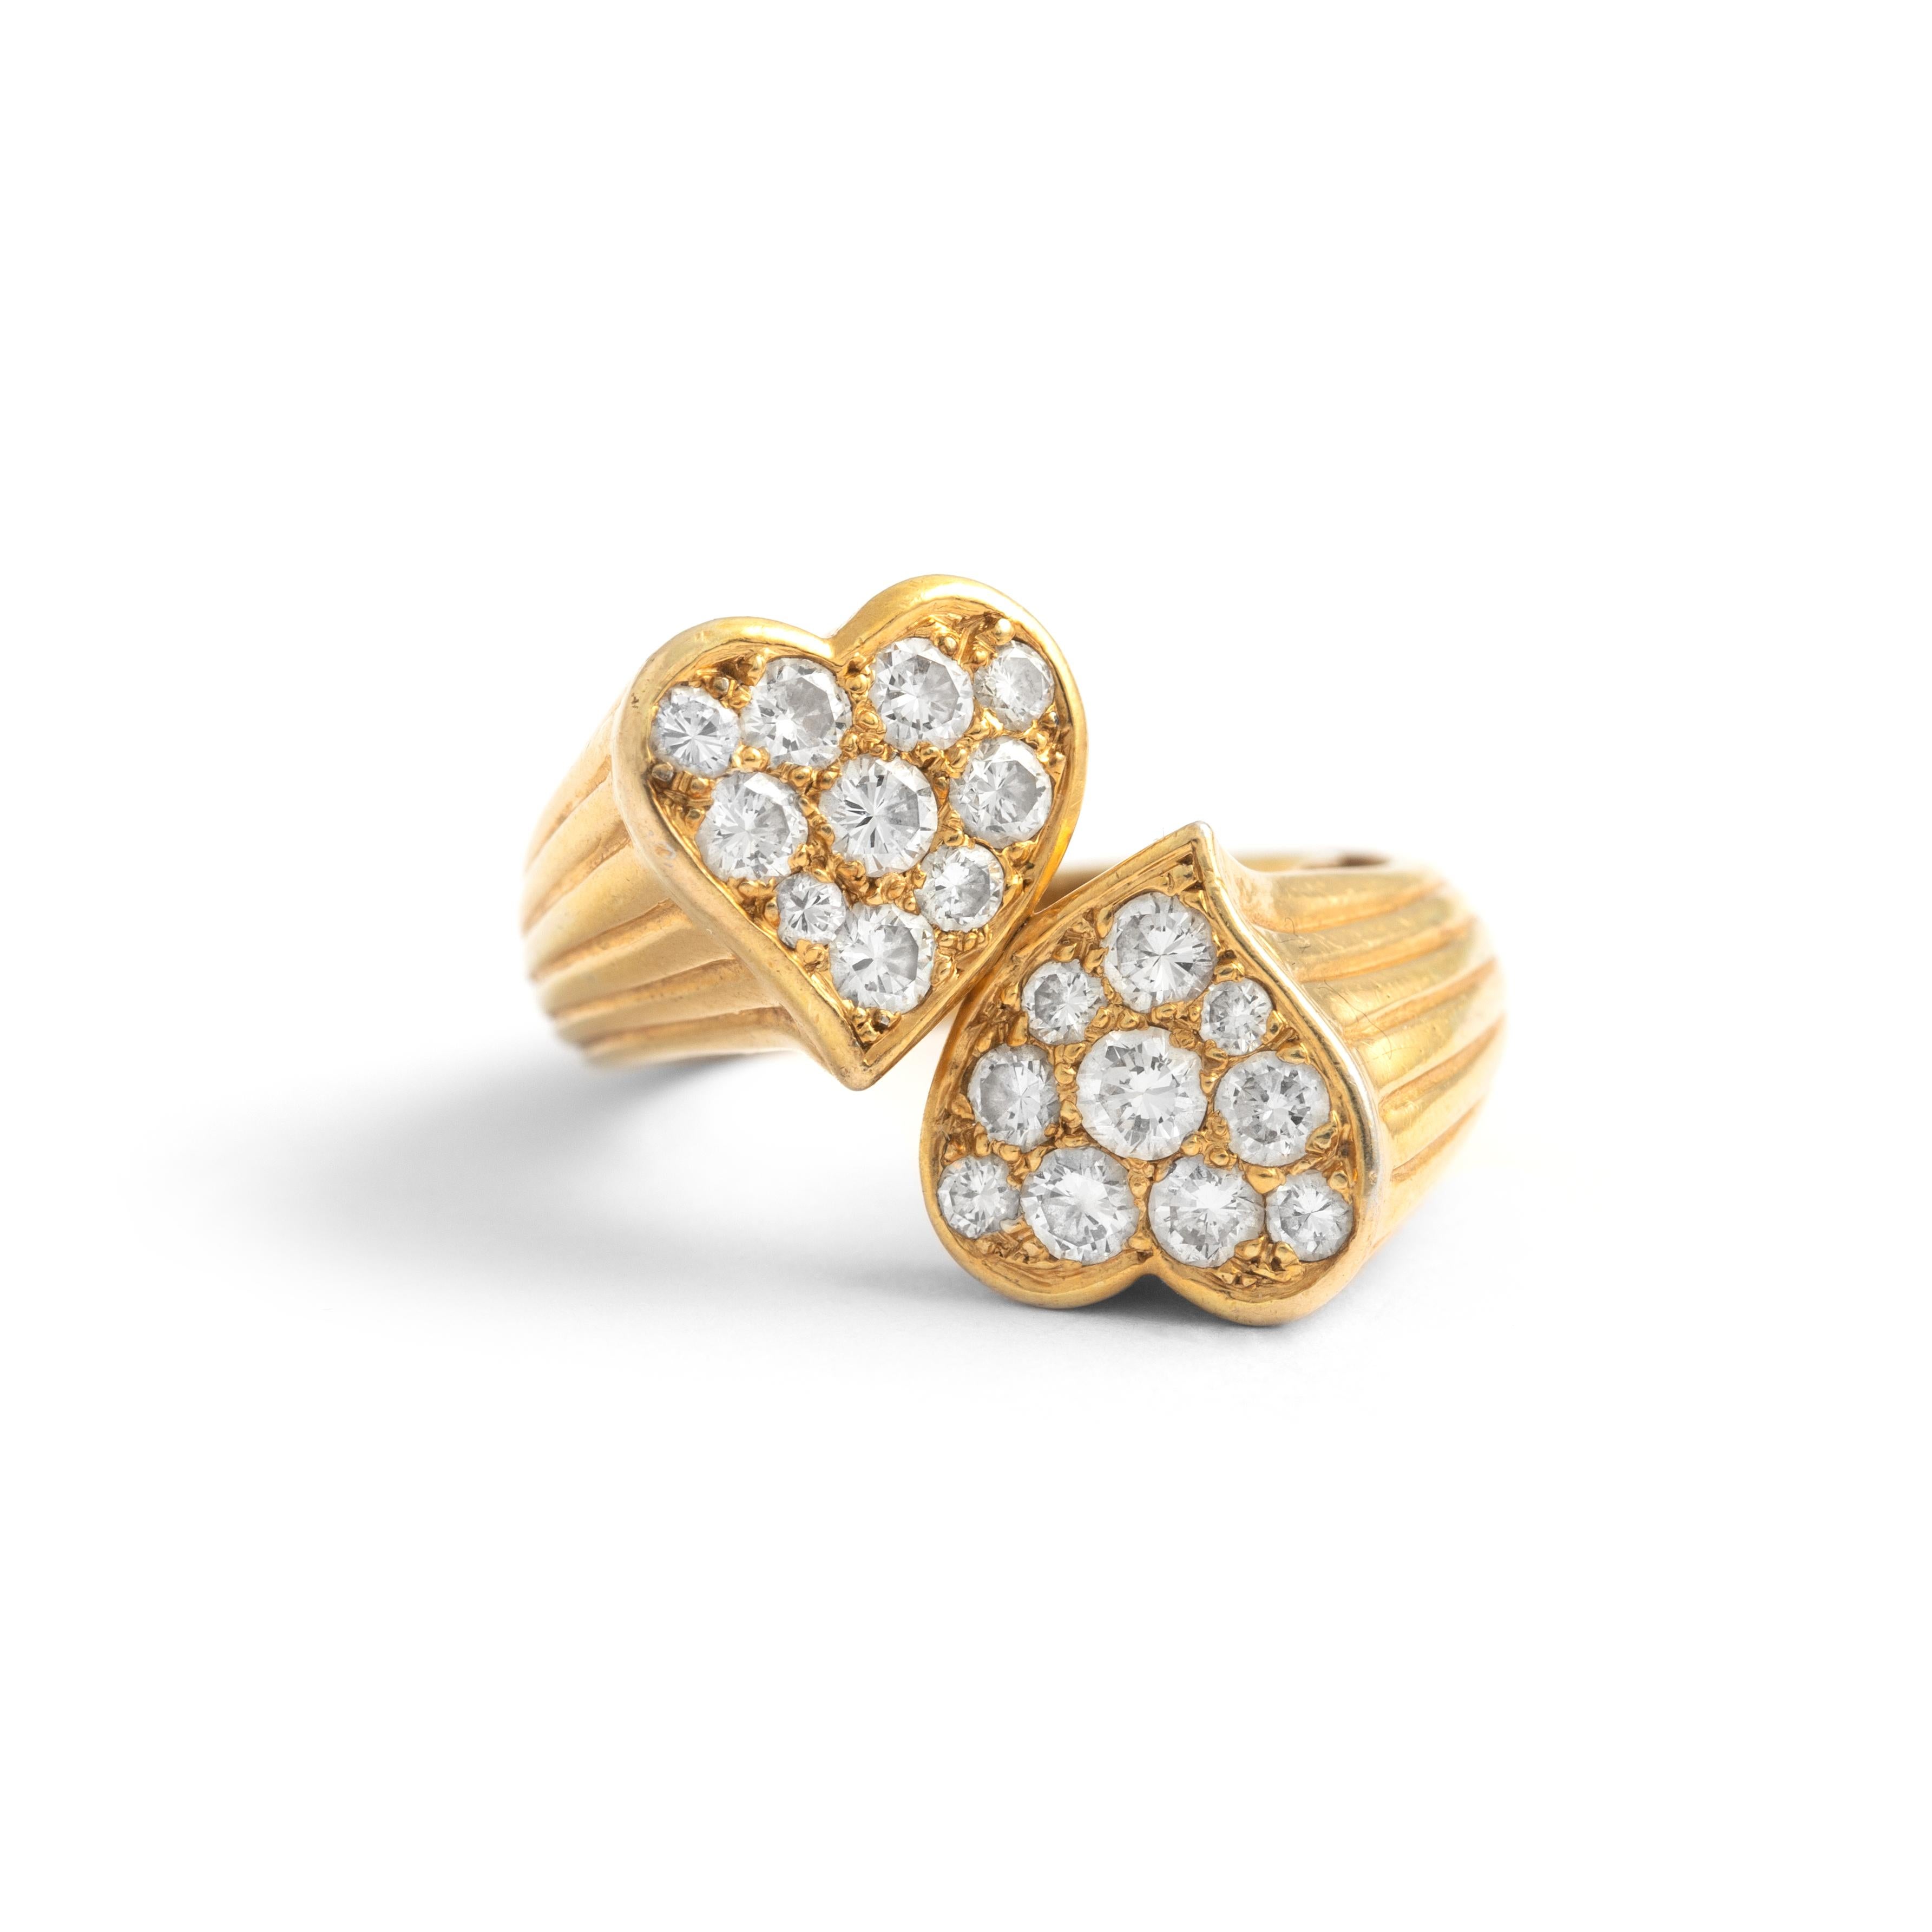 Diamant-Gelbgold 18K Zwei Herzen Crossover Ring.
Höhe Herzmotiv: ca. 1,60 Zentimeter.
Größe: 47.
Gewicht: 10,17 Gramm


